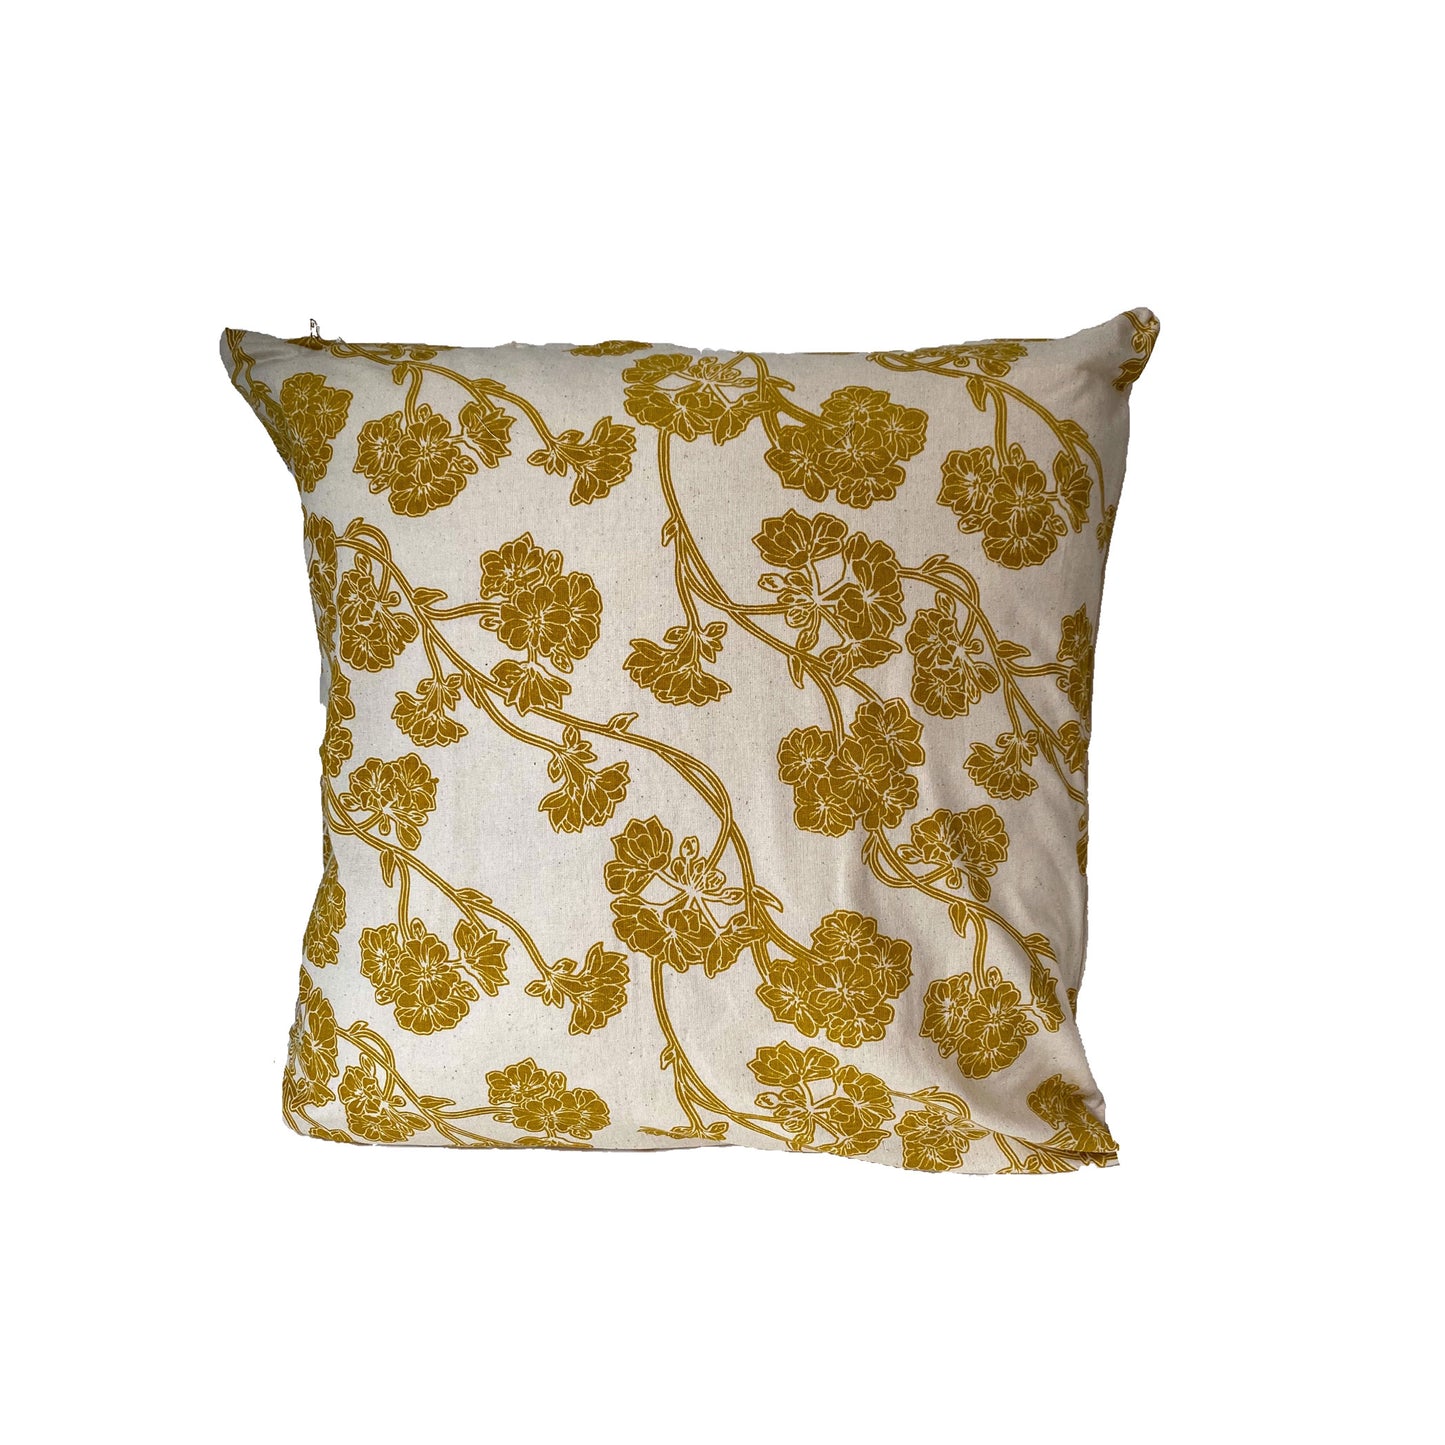 Stella Decor cushion cover design of cherry blossom in size 50x50 cm in color dark yellow white